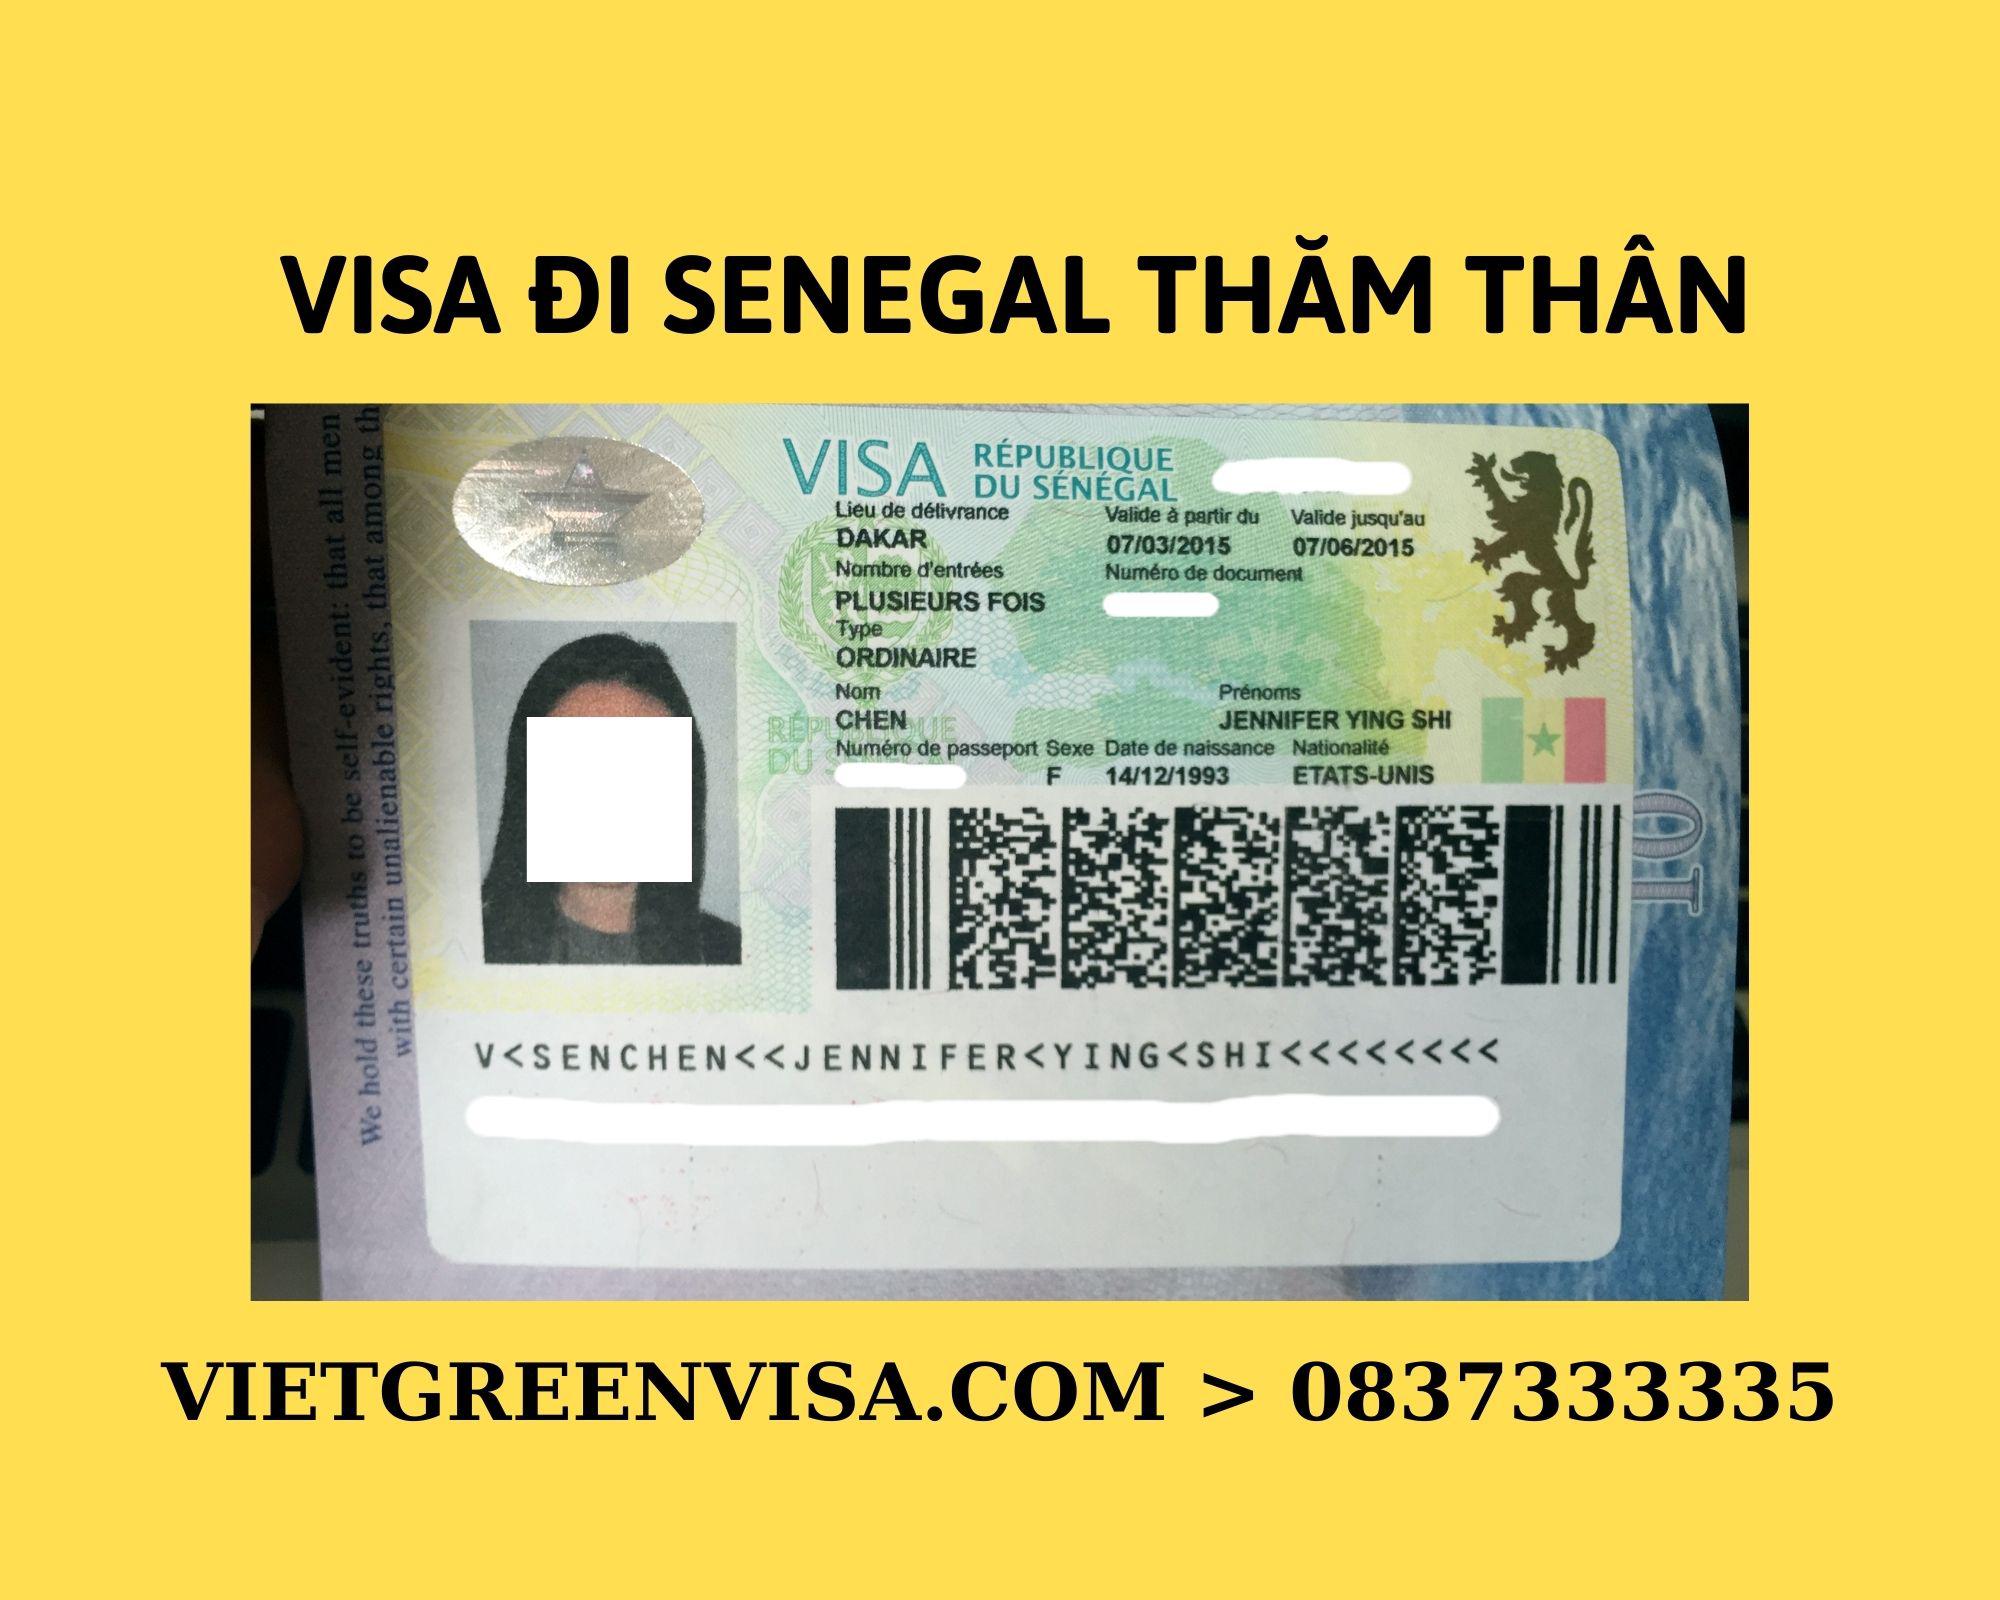 Làm Visa Senegal thăm thân uy tín, nhanh chóng